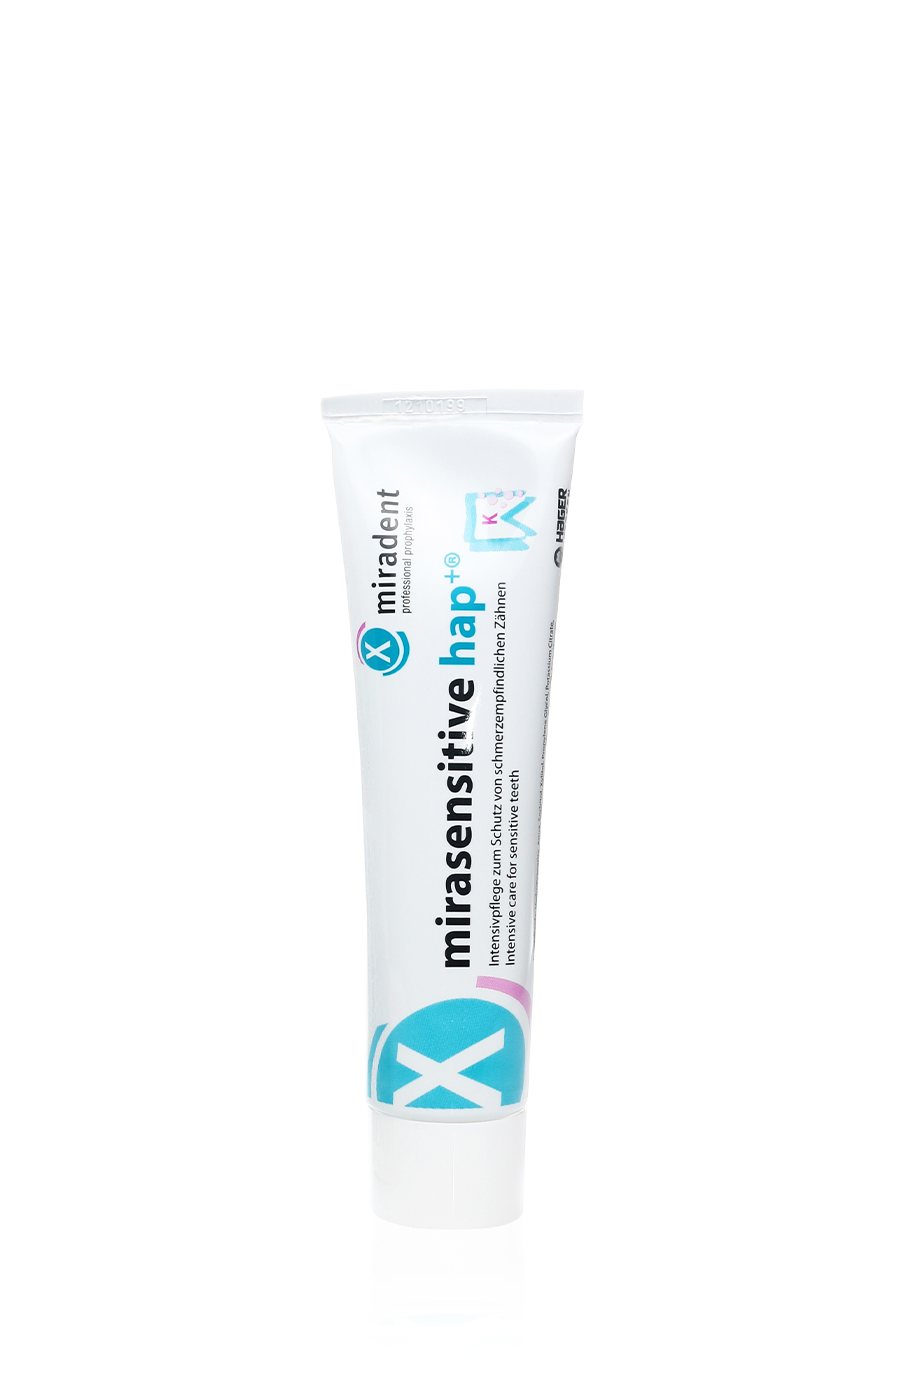 Mirasensitive Hap+  Зубная паста для защиты зубов от сверхчувствительности в интернет-магазине Authentica.love